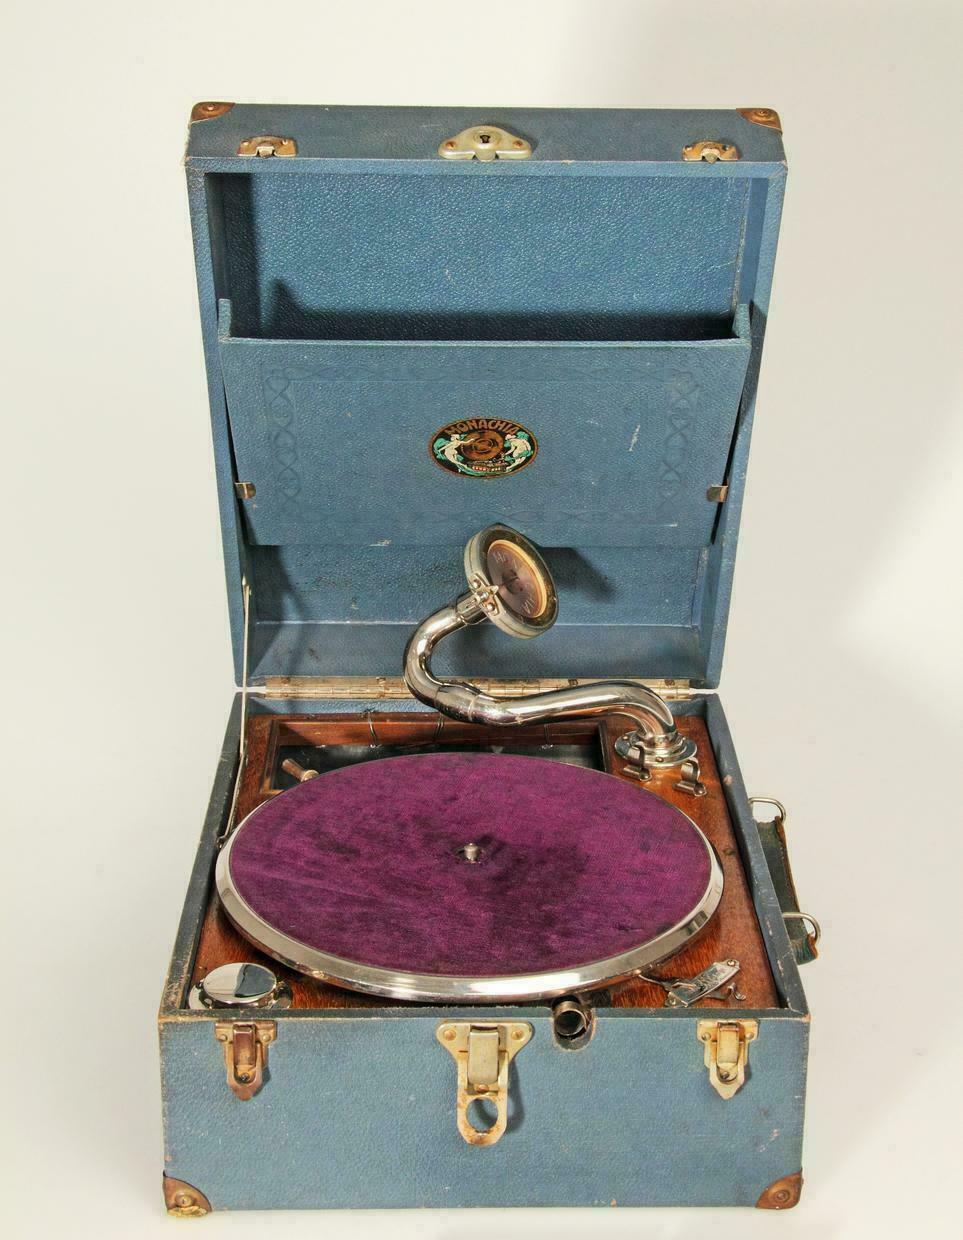 Koffergrammophon der Marke "Monachia". Das Abspielen von Schellackplatten auf solchen Geräten war in den 1920er Jahren sehr beliebt.